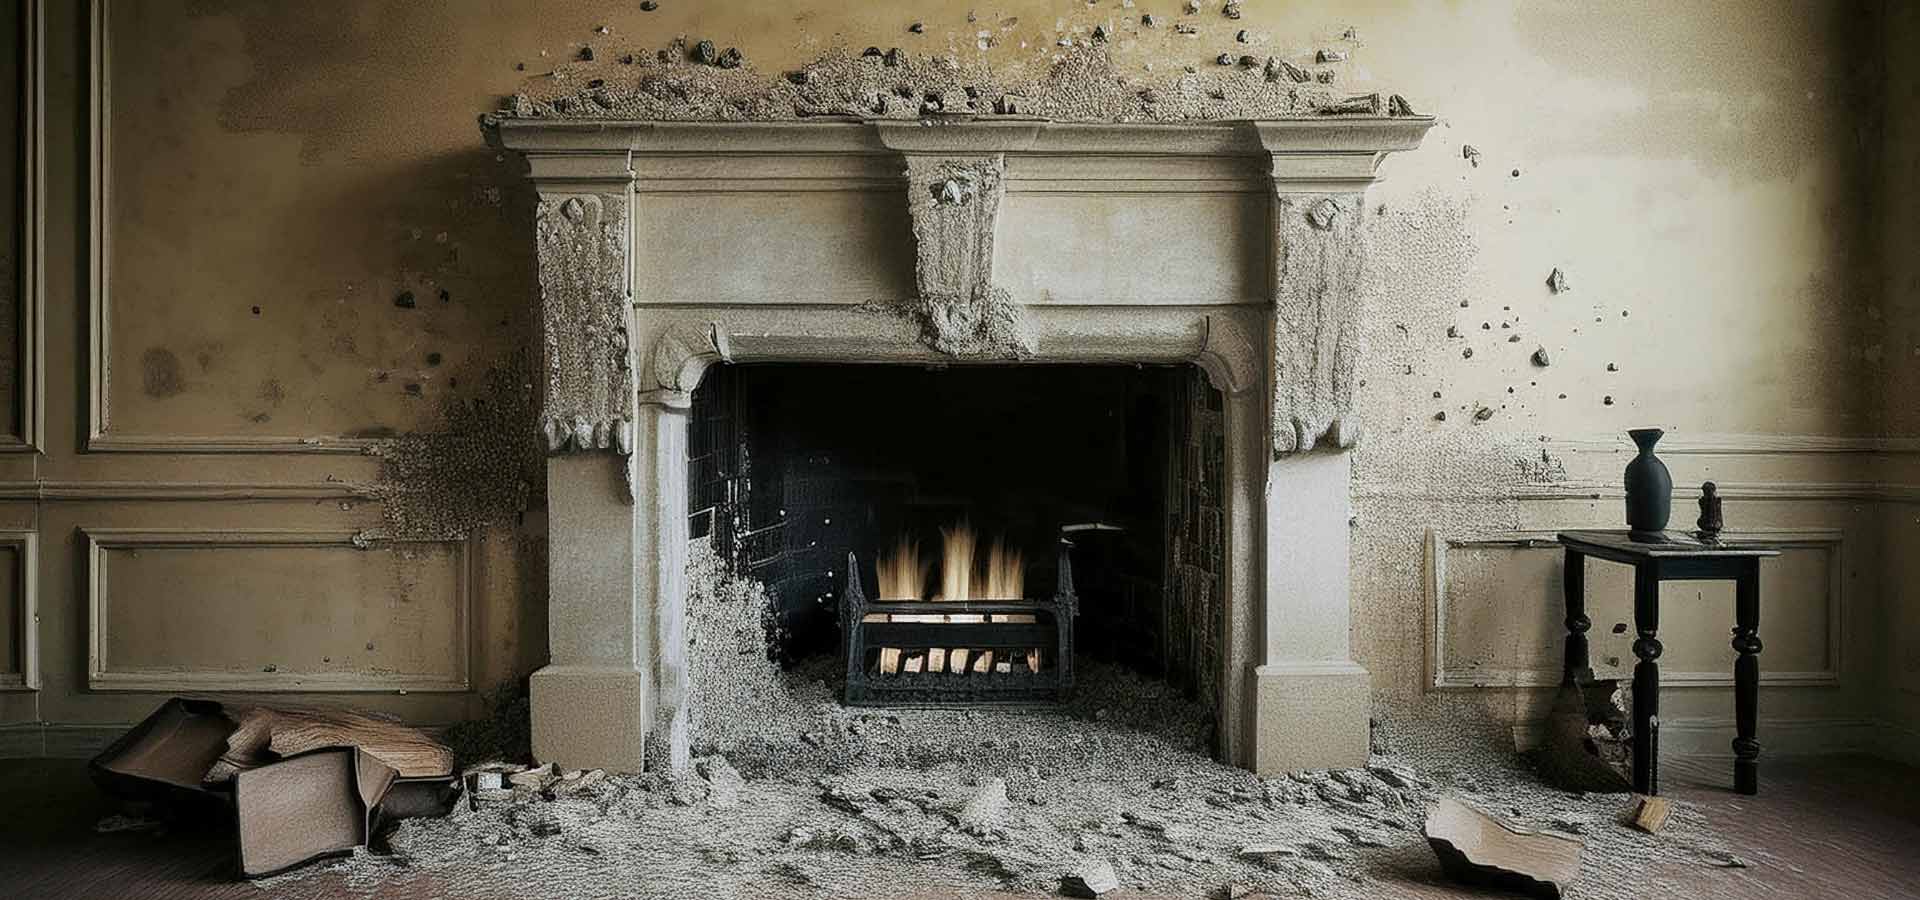 broken fireplace repair service cost